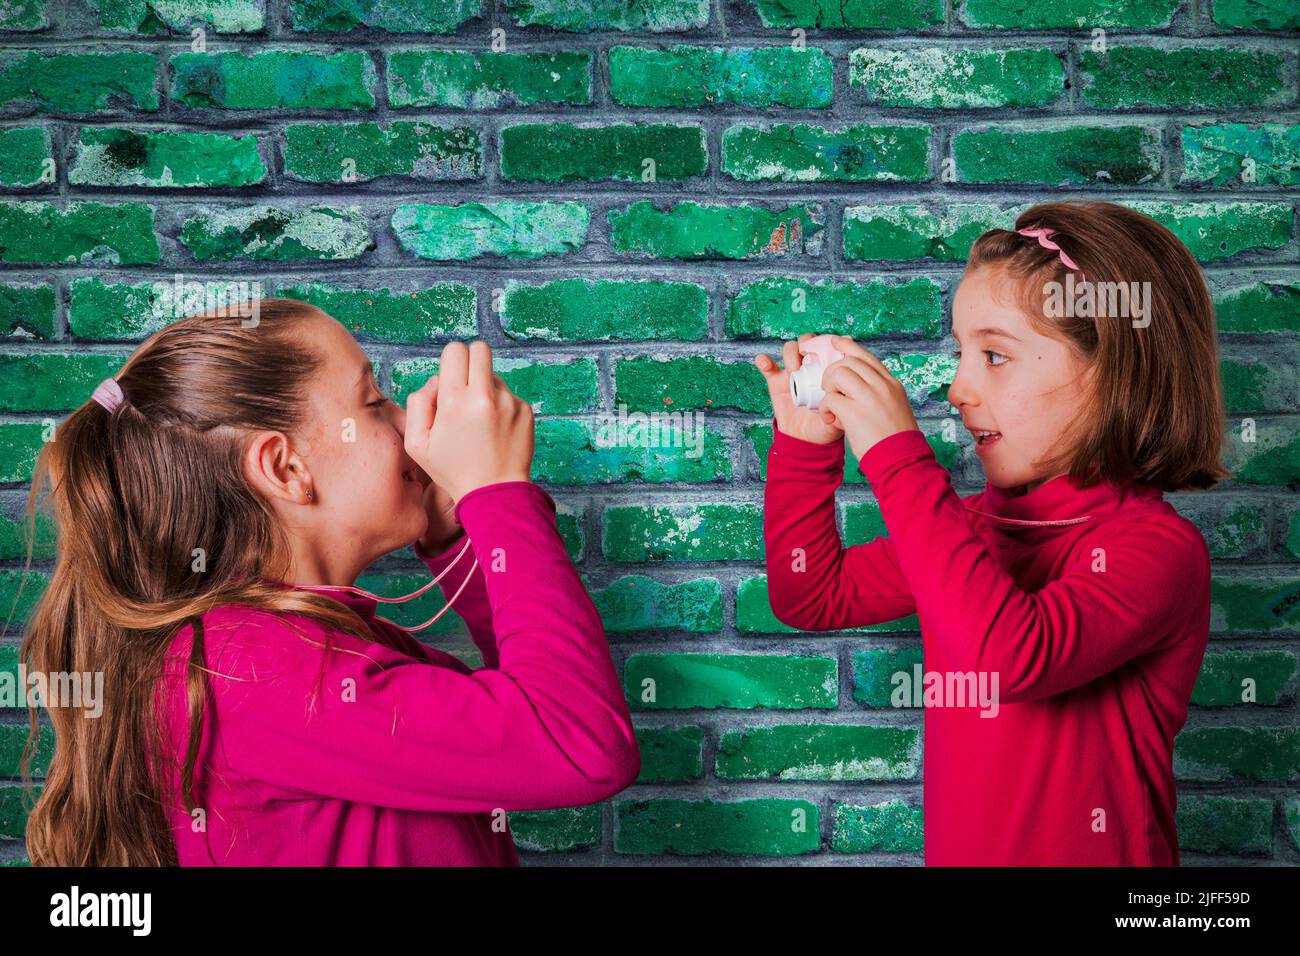 Una pareja de chicas pequeñas haciendo fotografías con la cámara de fotos de juguete, con una pared de ladrillo verde sobre el fondo Foto de stock